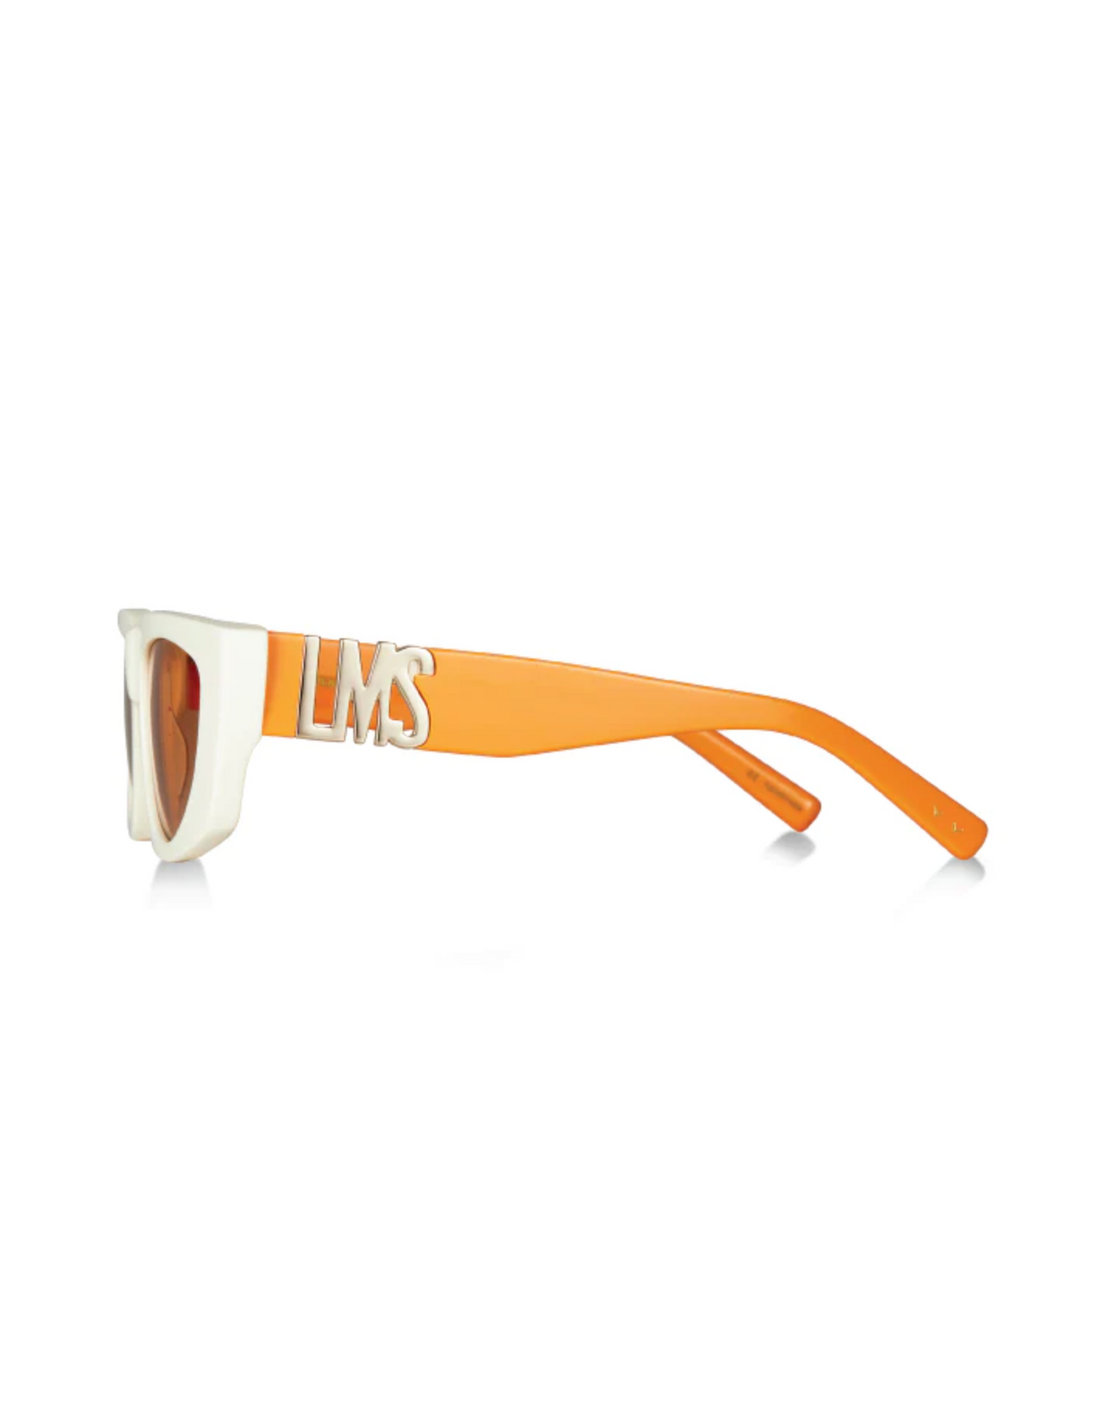 LMS Hot & Steamy - Pared Eyewear - Orange